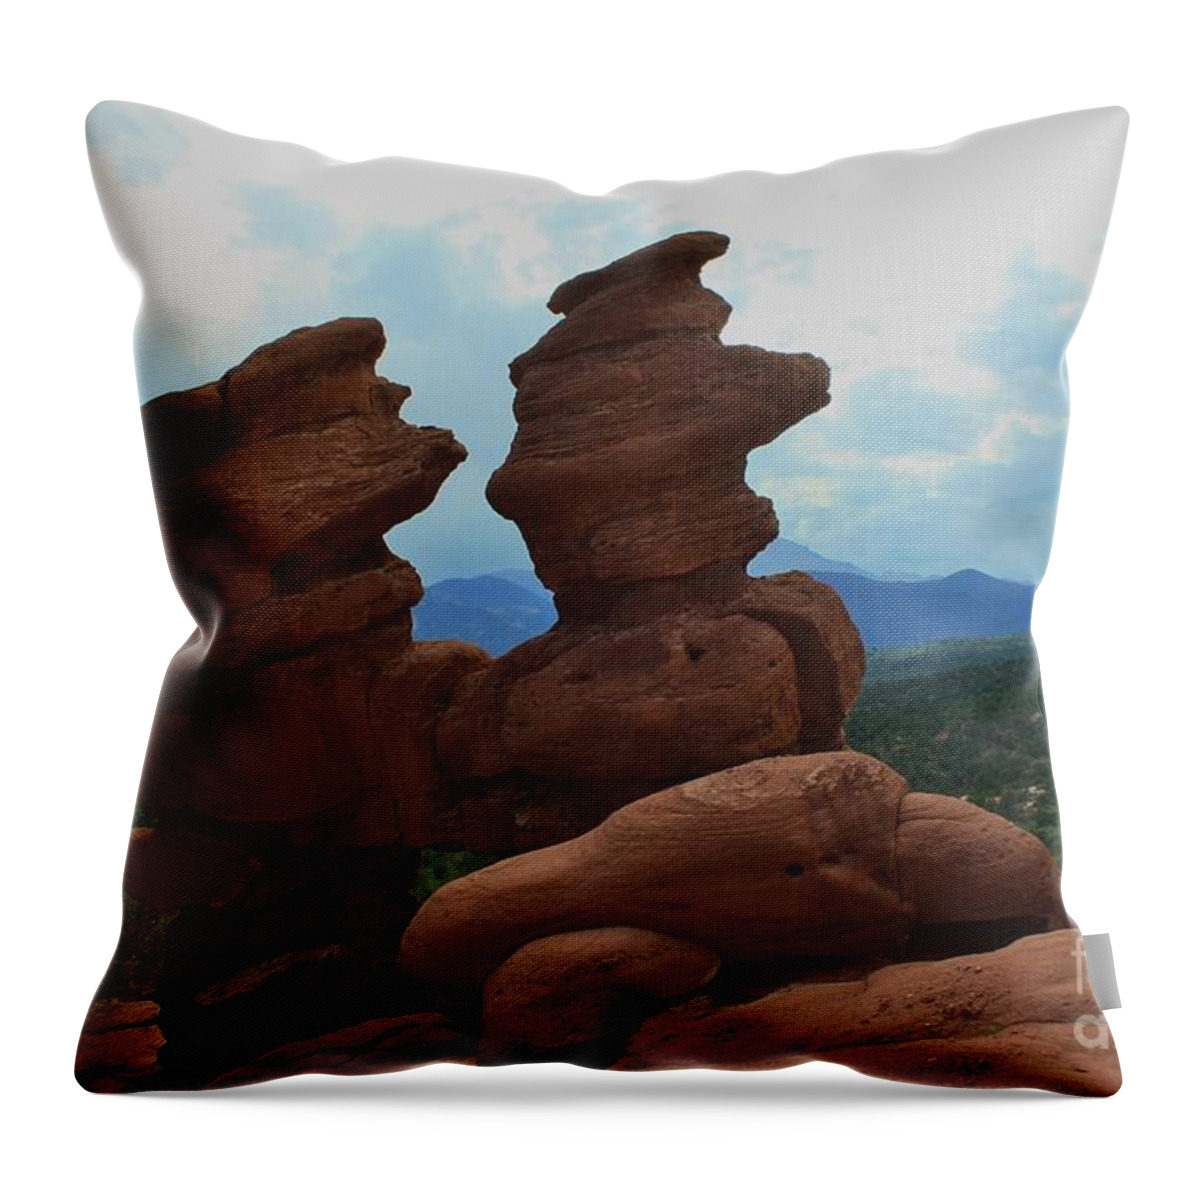 Colorado Throw Pillow featuring the photograph Siamese Twins Garden of the Gods Colorado by Robert D Brozek